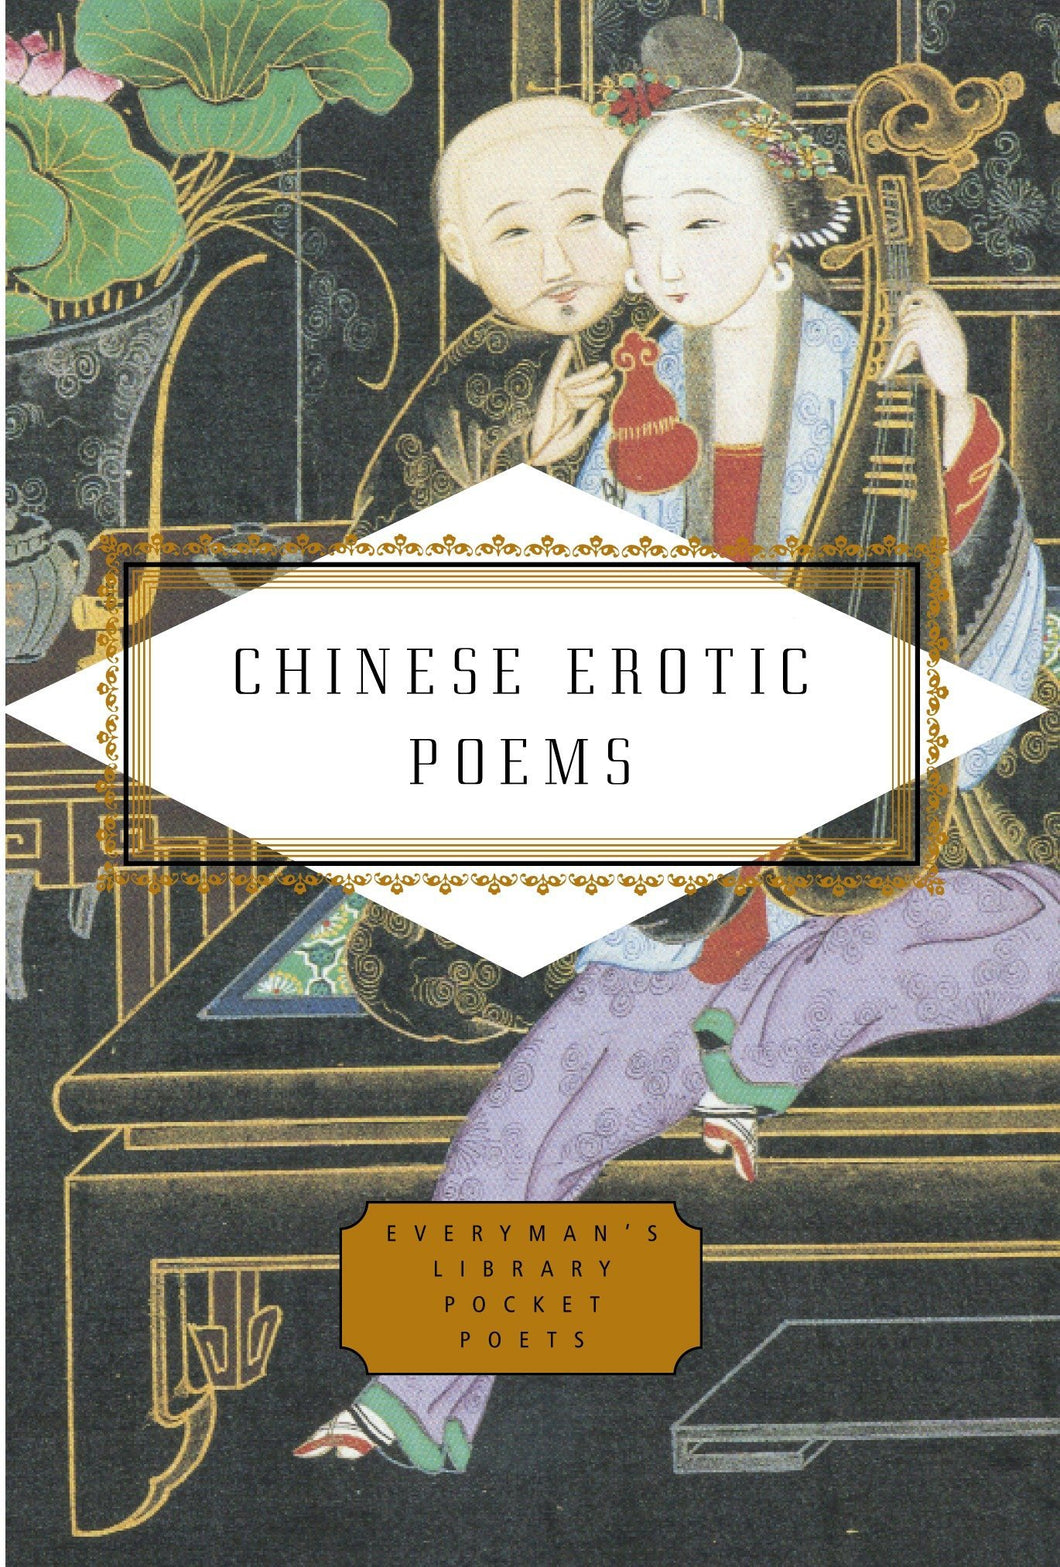 Chinese Erotic Poems ร้านหนังสือและสิ่งของ เป็นร้านหนังสือภาษาอังกฤษหายาก และร้านกาแฟ หรือ บุ๊คคาเฟ่ ตั้งอยู่สุขุมวิท กรุงเทพ